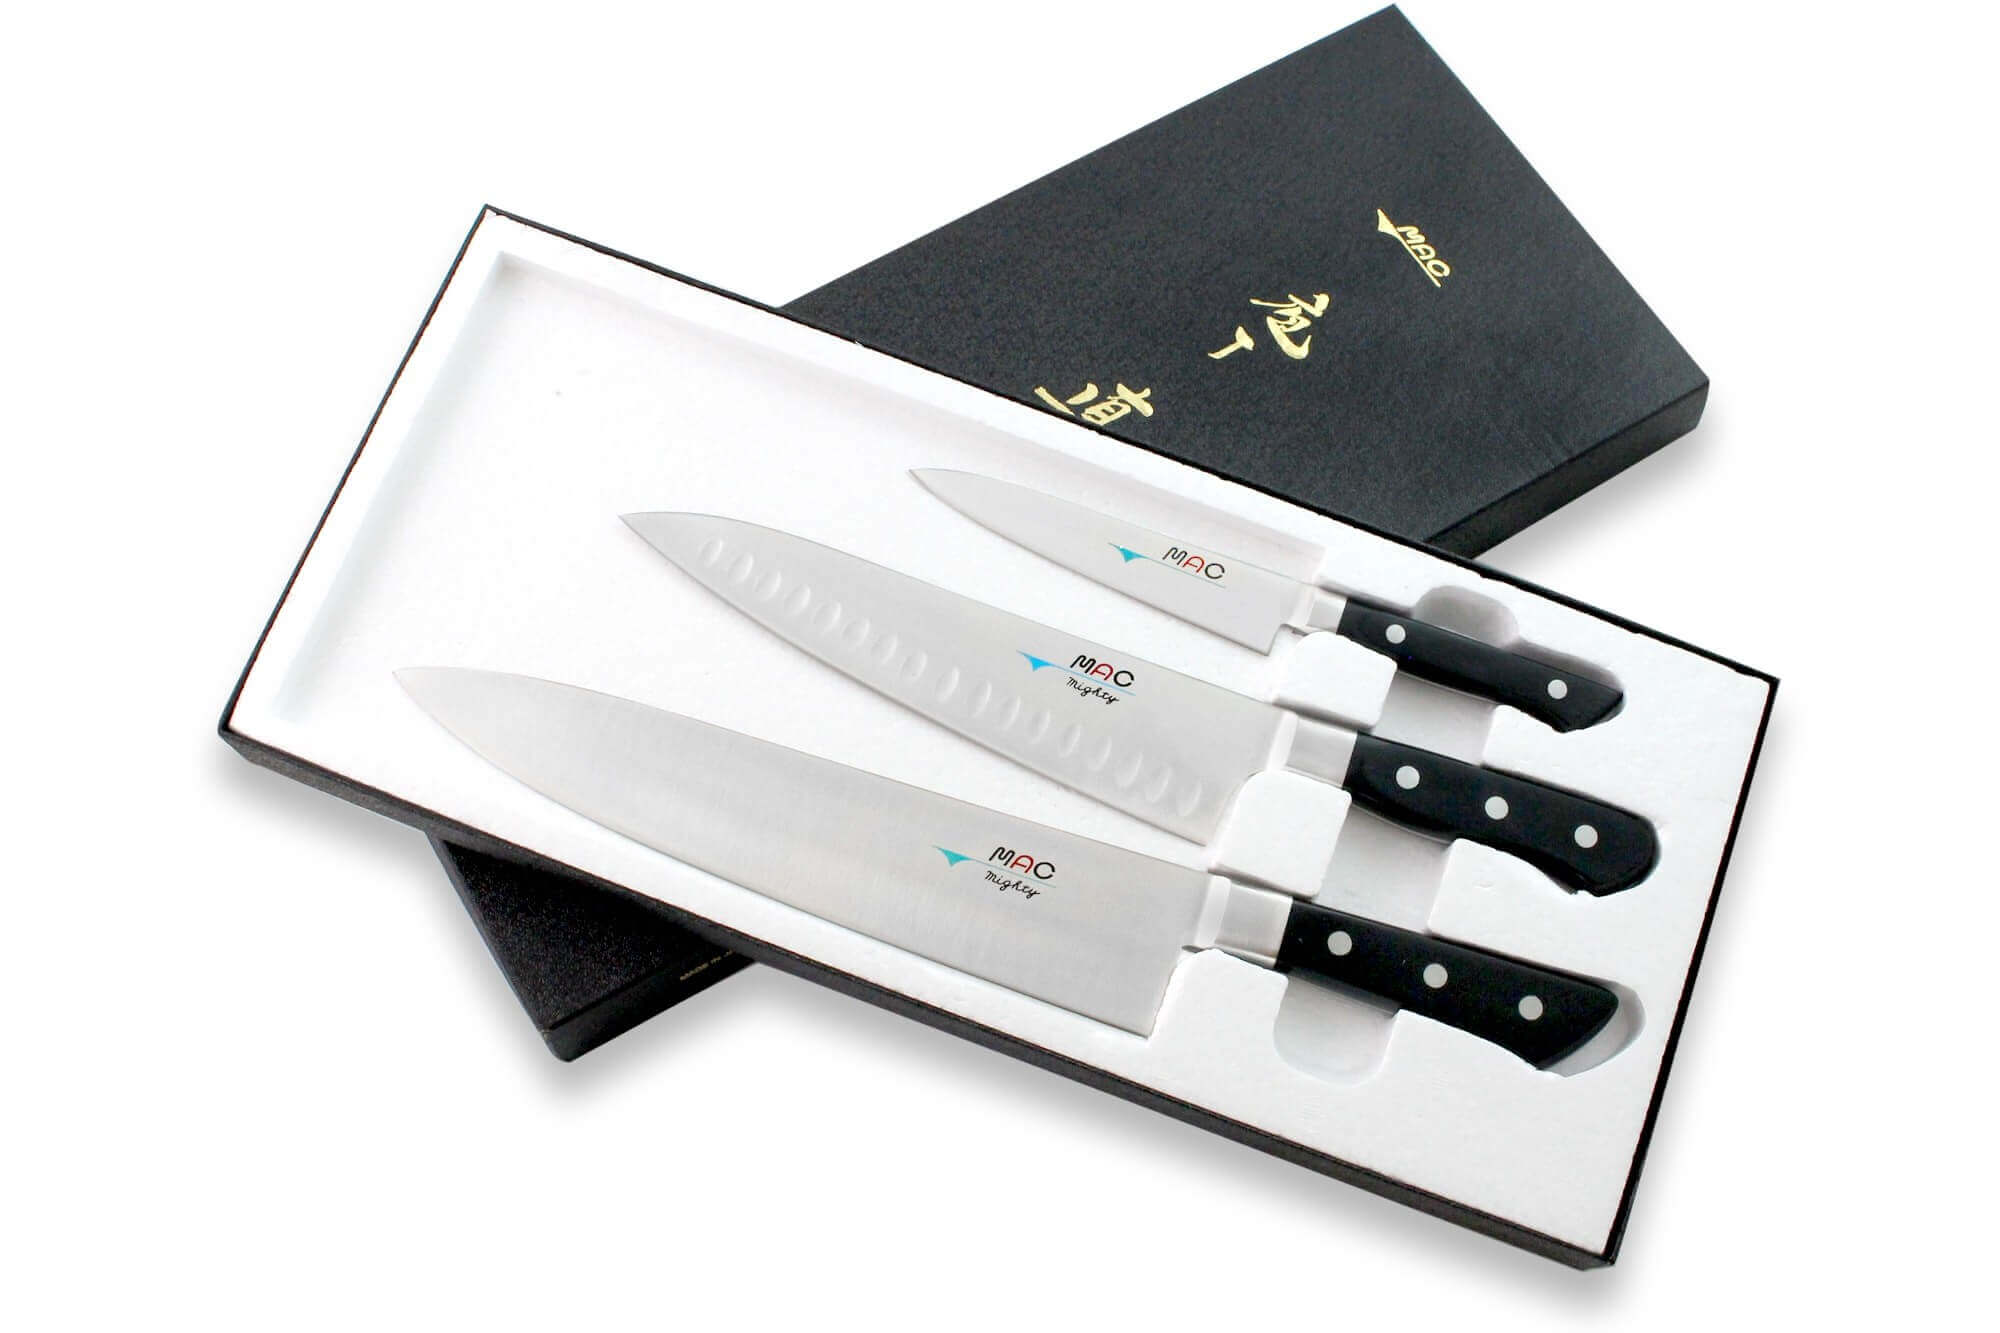 Couteau japonais, Couteaux de cuisine japonais 